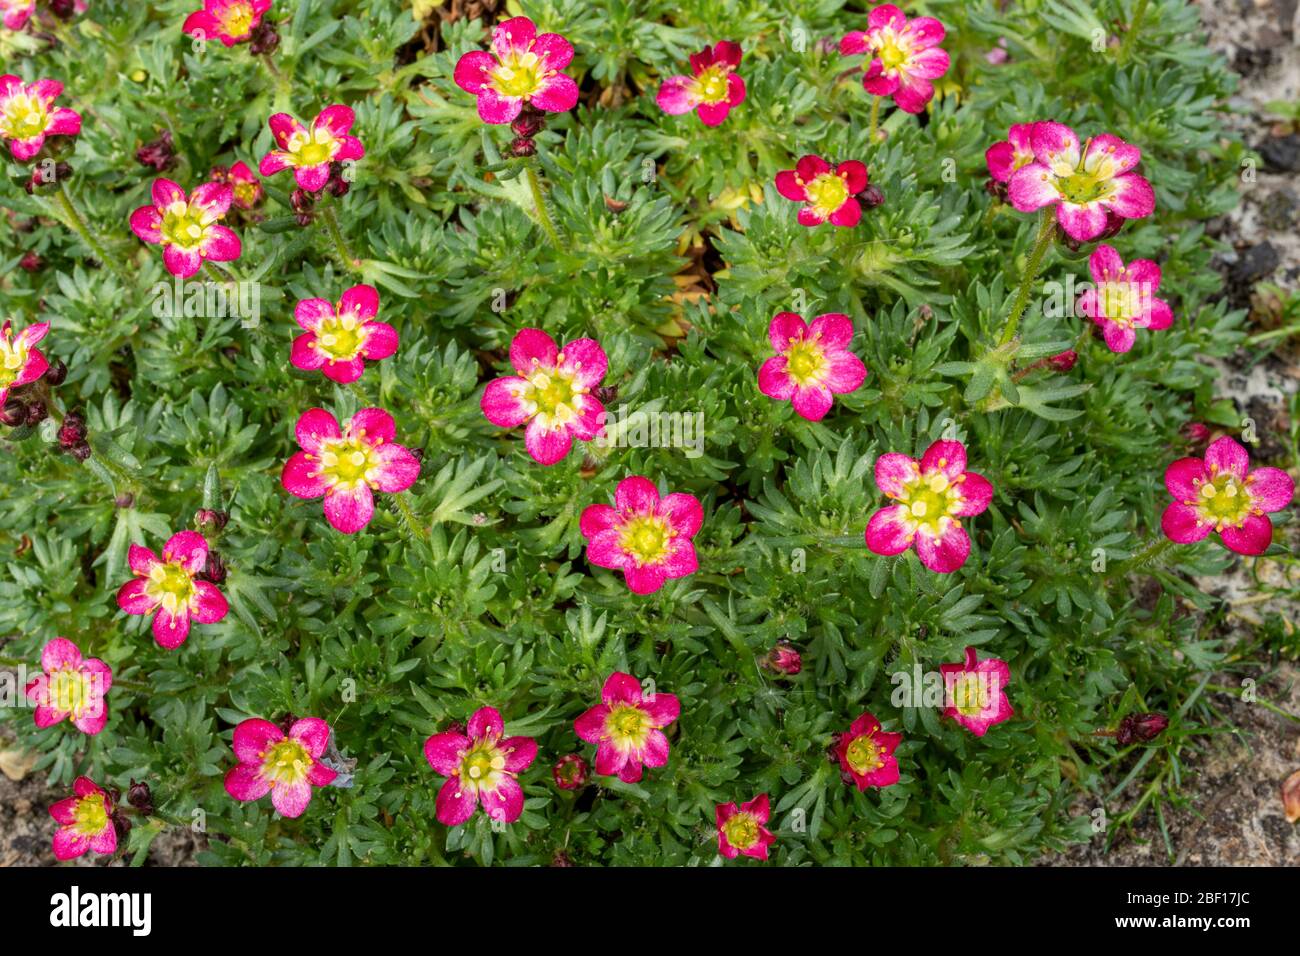 Mossy saxifrage 'pink' (Saxifraga arendsii) Stock Photo